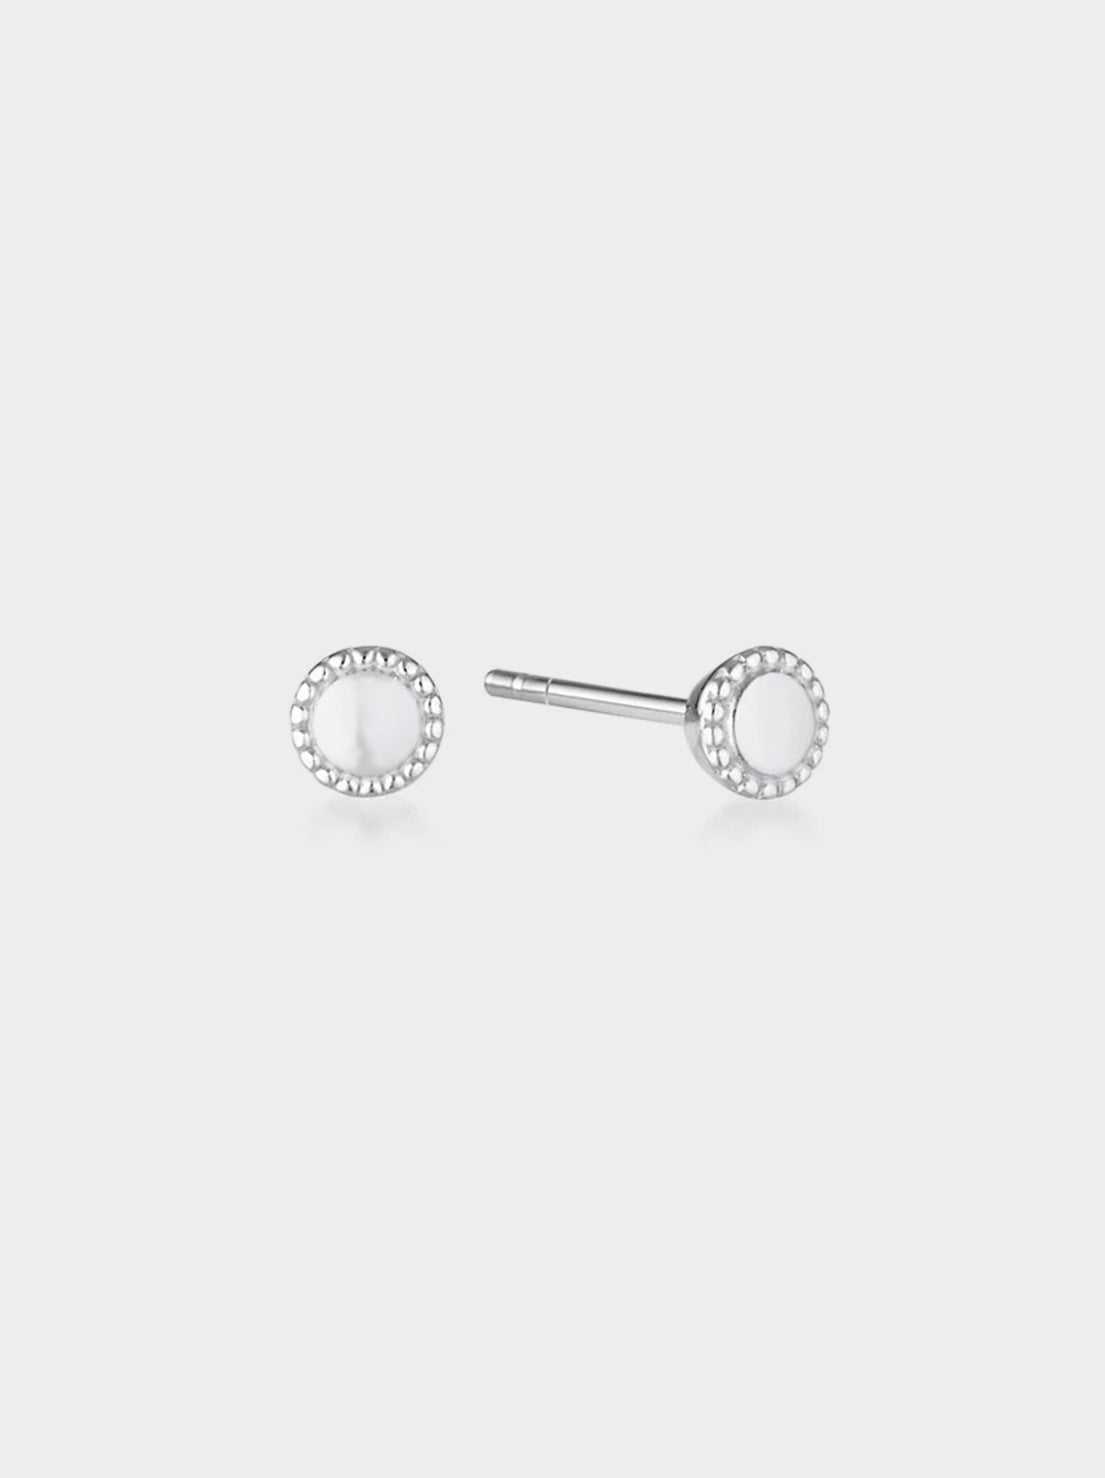 Linda Tahija - Mill Stud Earrings - Sterling Silver